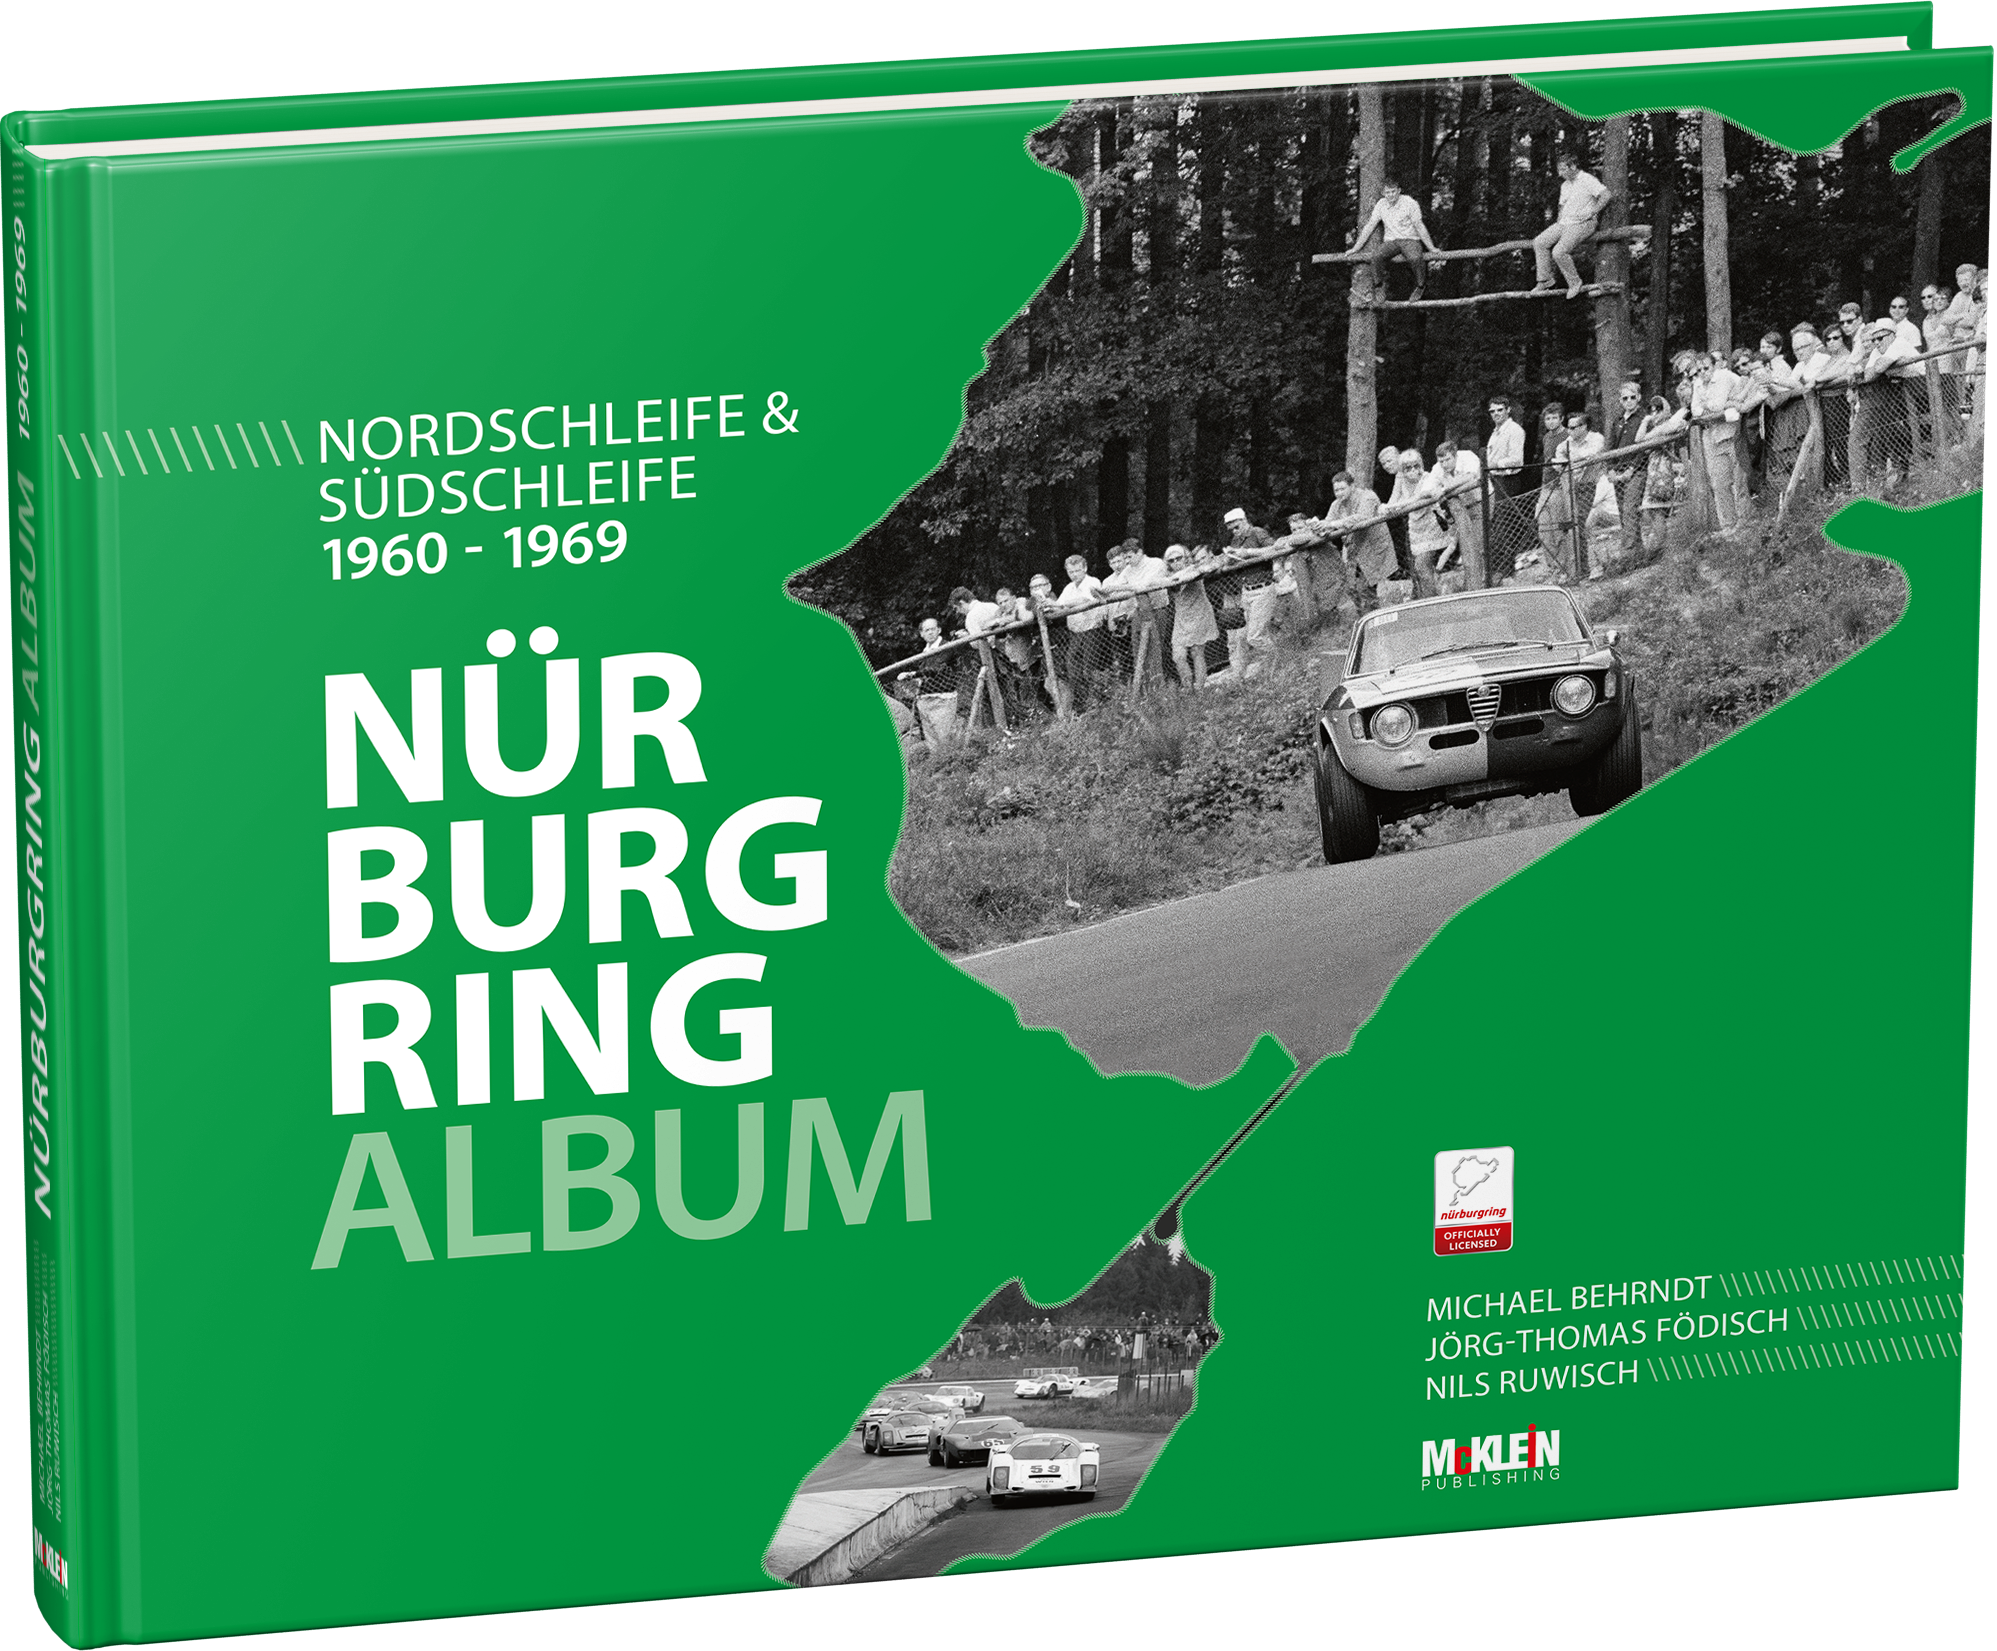 NURBURGRING ALBUM NORDSCHLEIFE & SUDSCHLEIFE DEUTSCHE/ENGLISH EDITION MCKLEIN